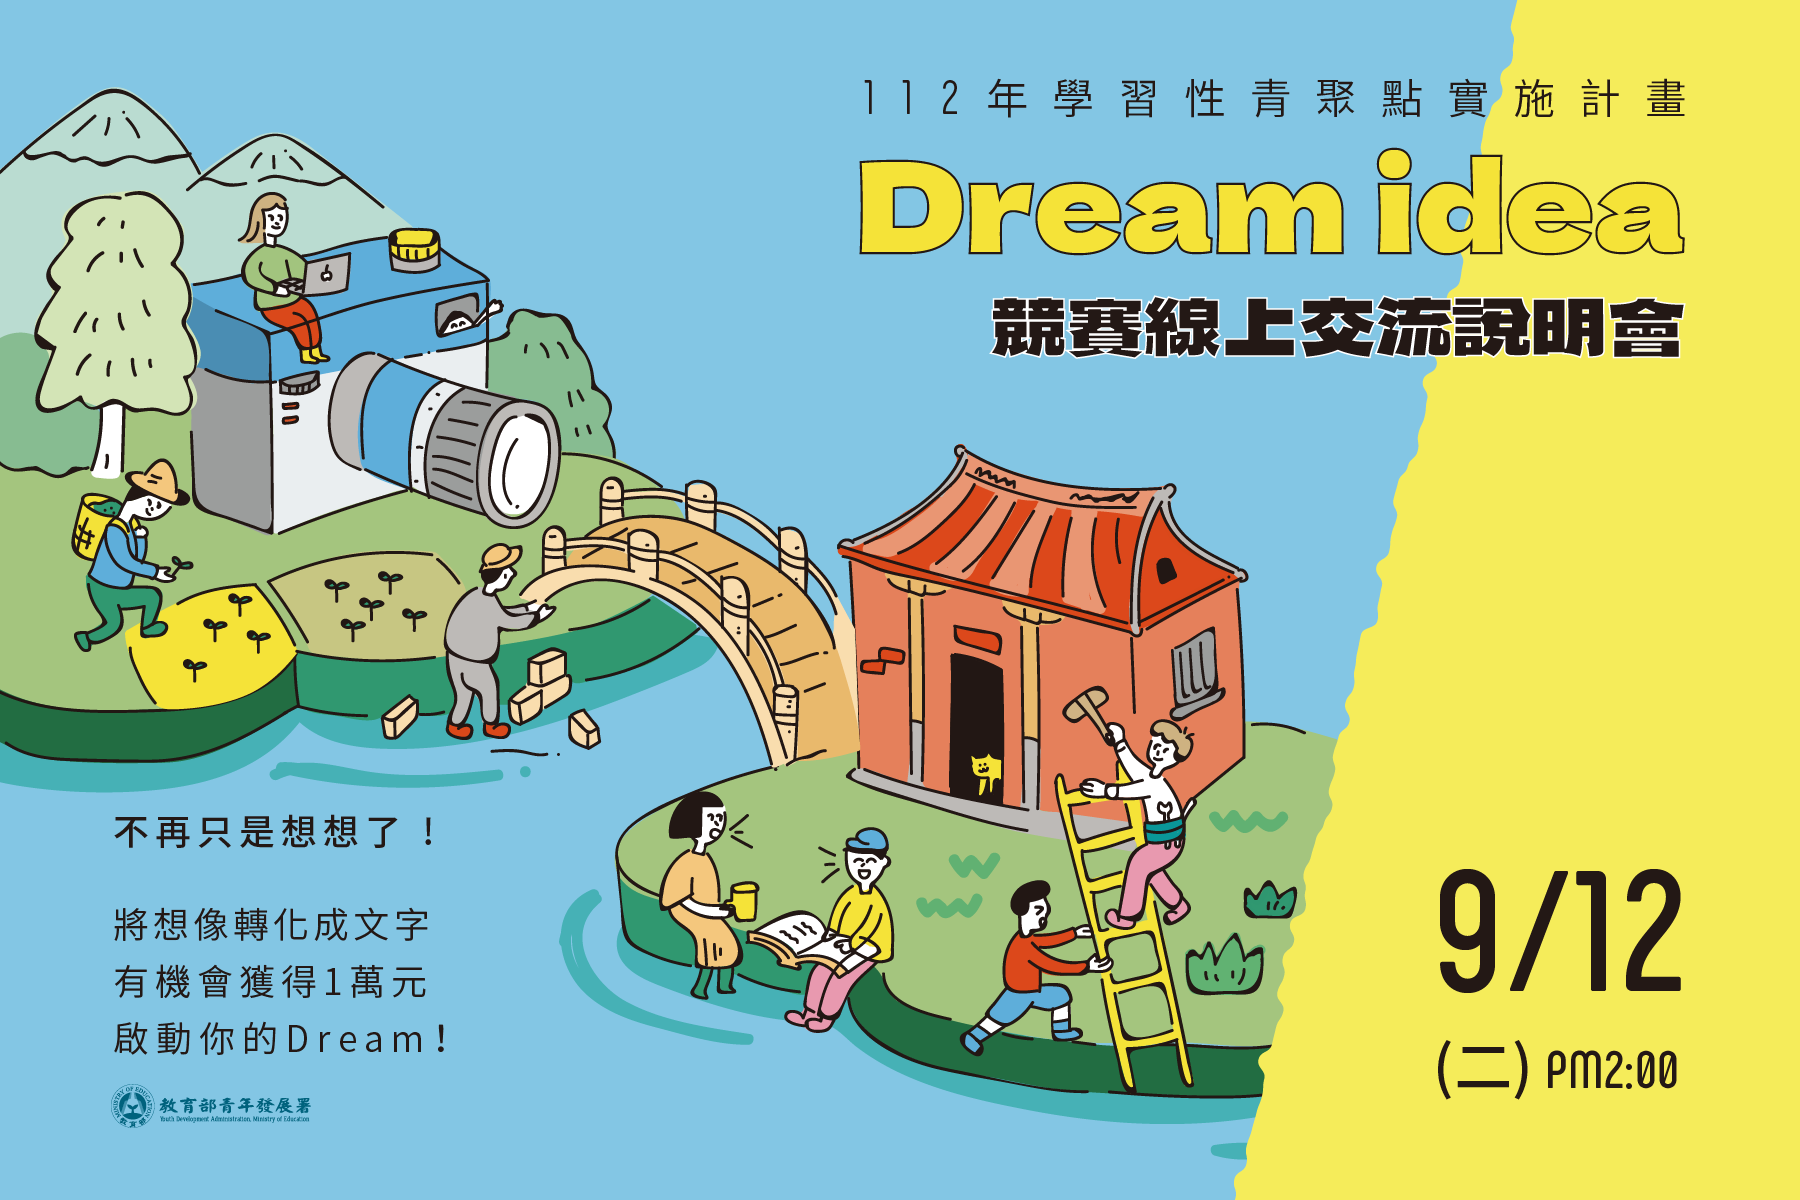 青年署「Dream Idea 青年夢想行動競賽」 獎1萬 鼓勵青年發想社區提案